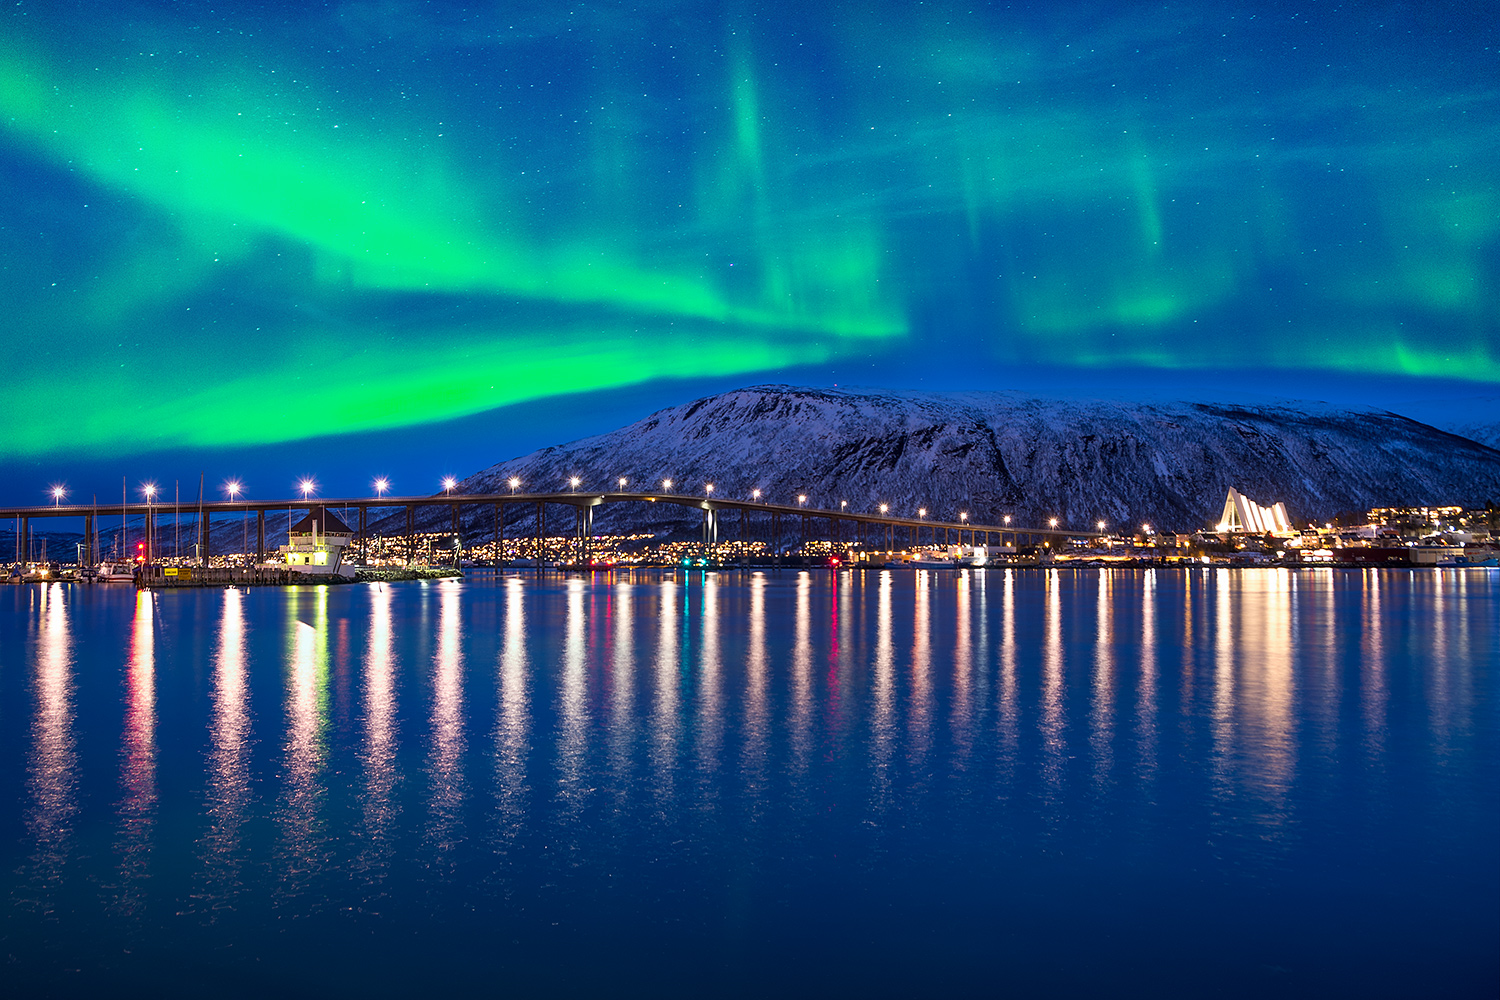 Günstige Polarlichtreisen mit Hurtigruten zu Schnaeppchen Preisen